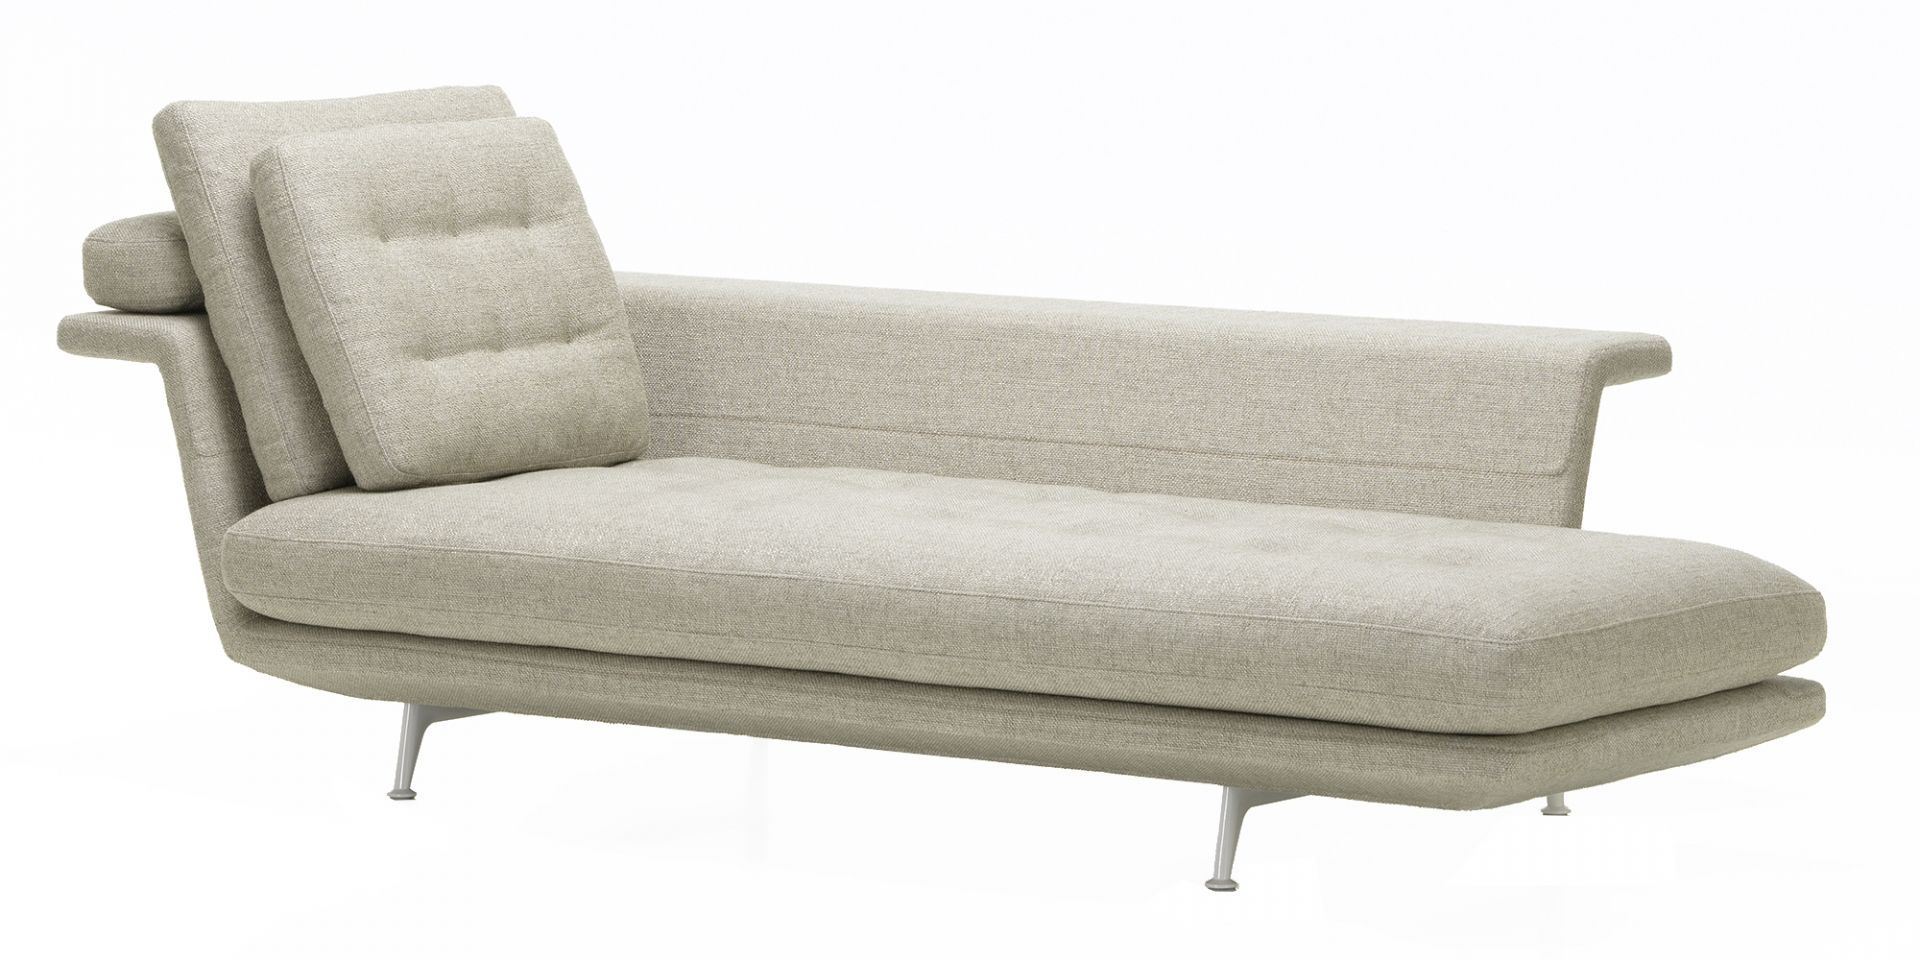 Vitra designové sedačky Grand Sofa Chaise Longue (cena bez polštářů) - DESIGNPROPAGANDA